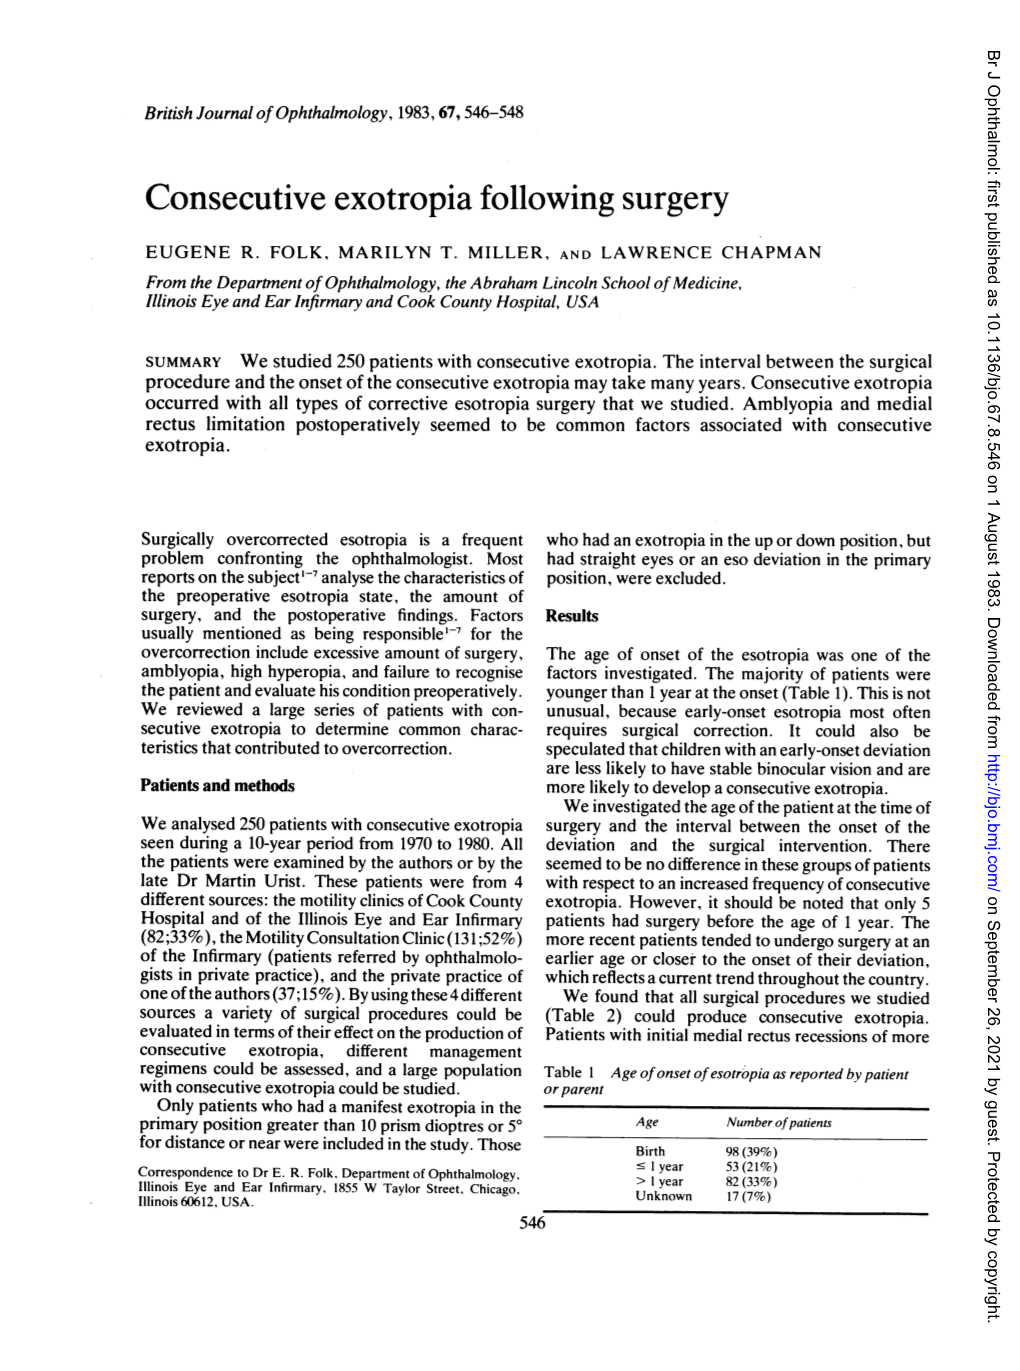 Consecutive Exotropia Following Surgery